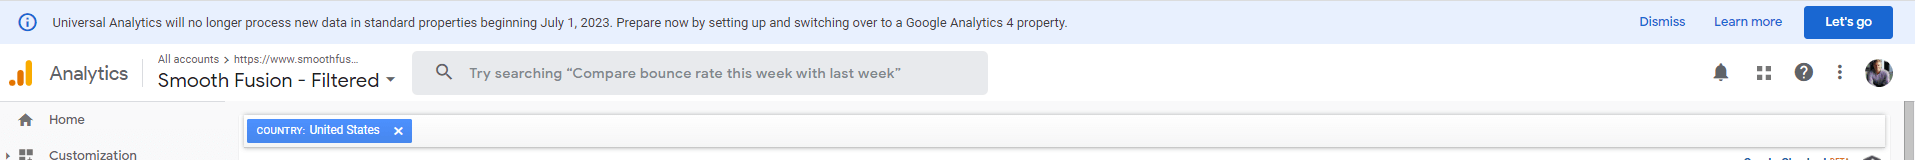 universal analytics and google analytics 4 dashboard notification